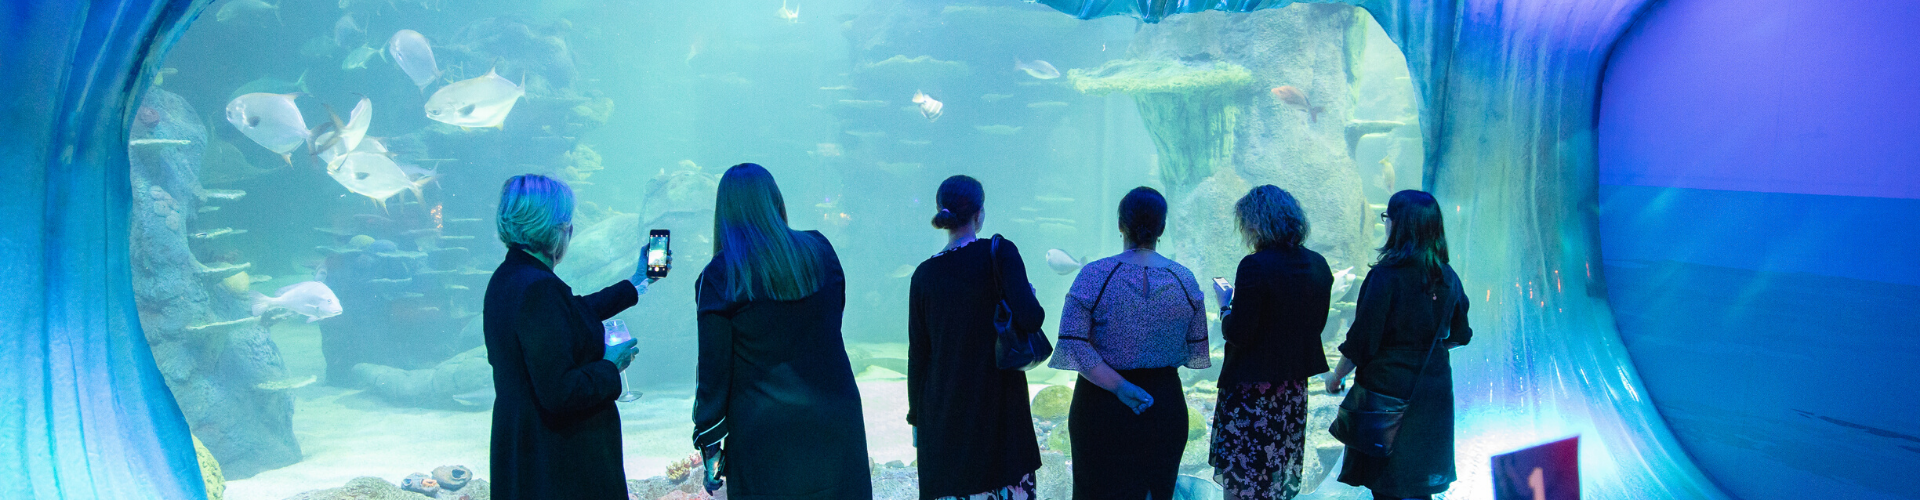 Corporate Events Sea Life Sydney Aquarium